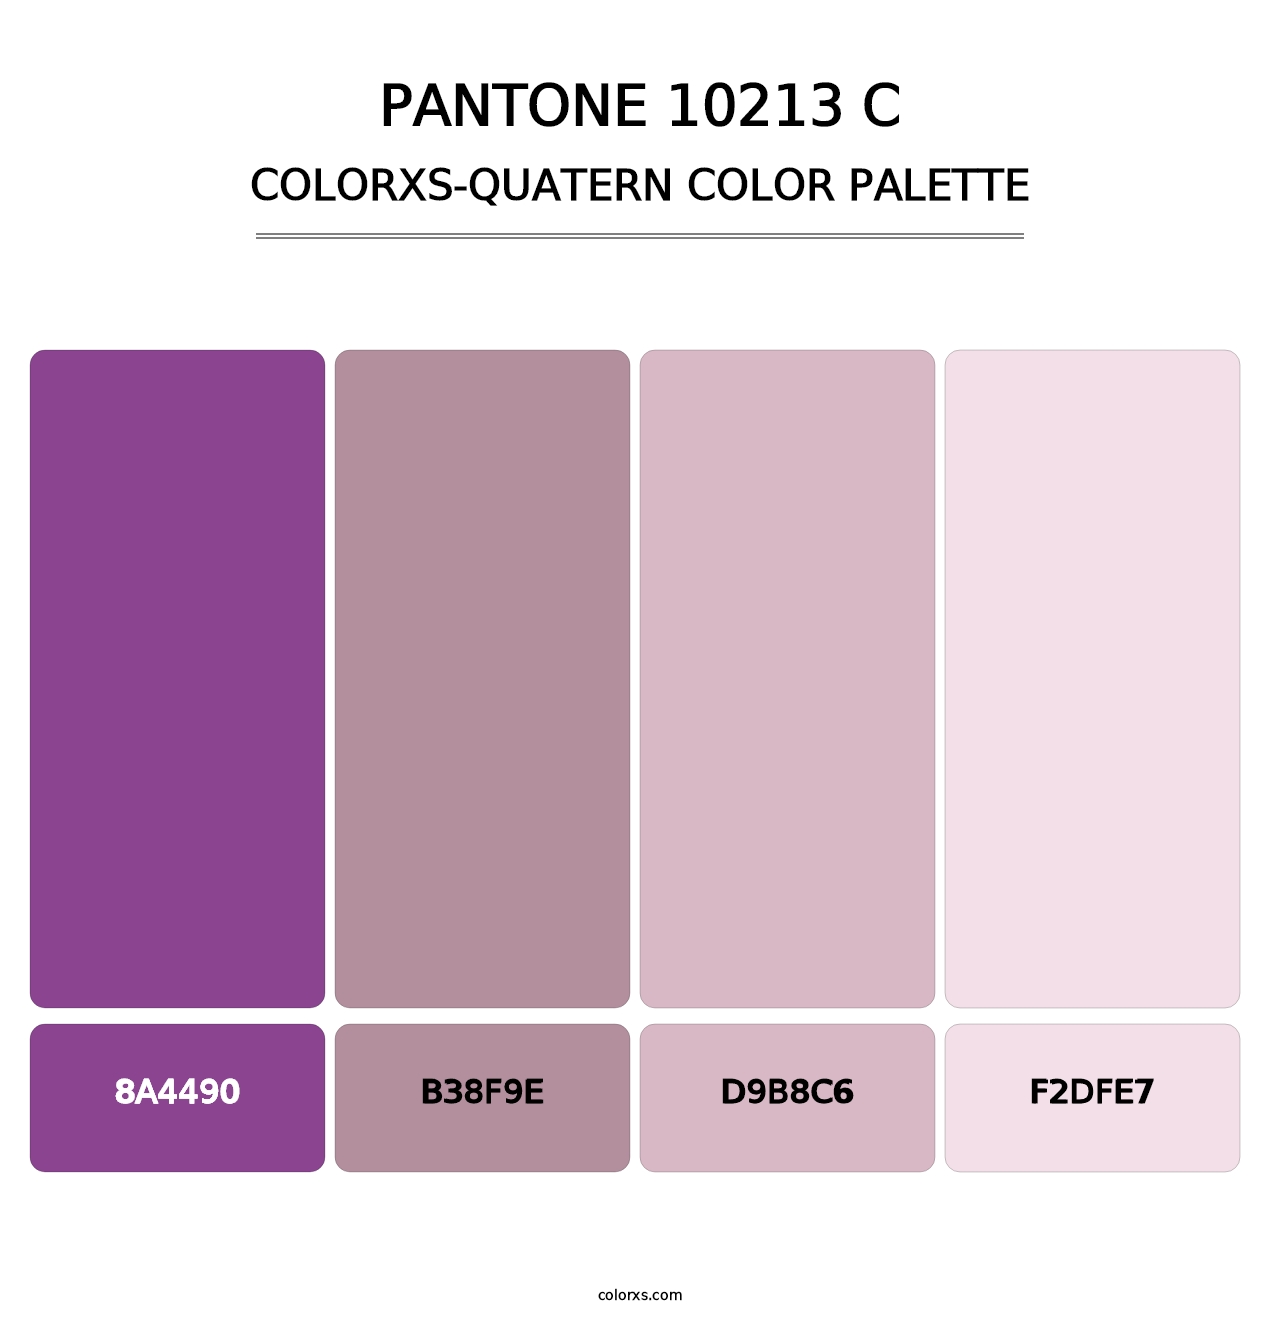 PANTONE 10213 C - Colorxs Quatern Palette